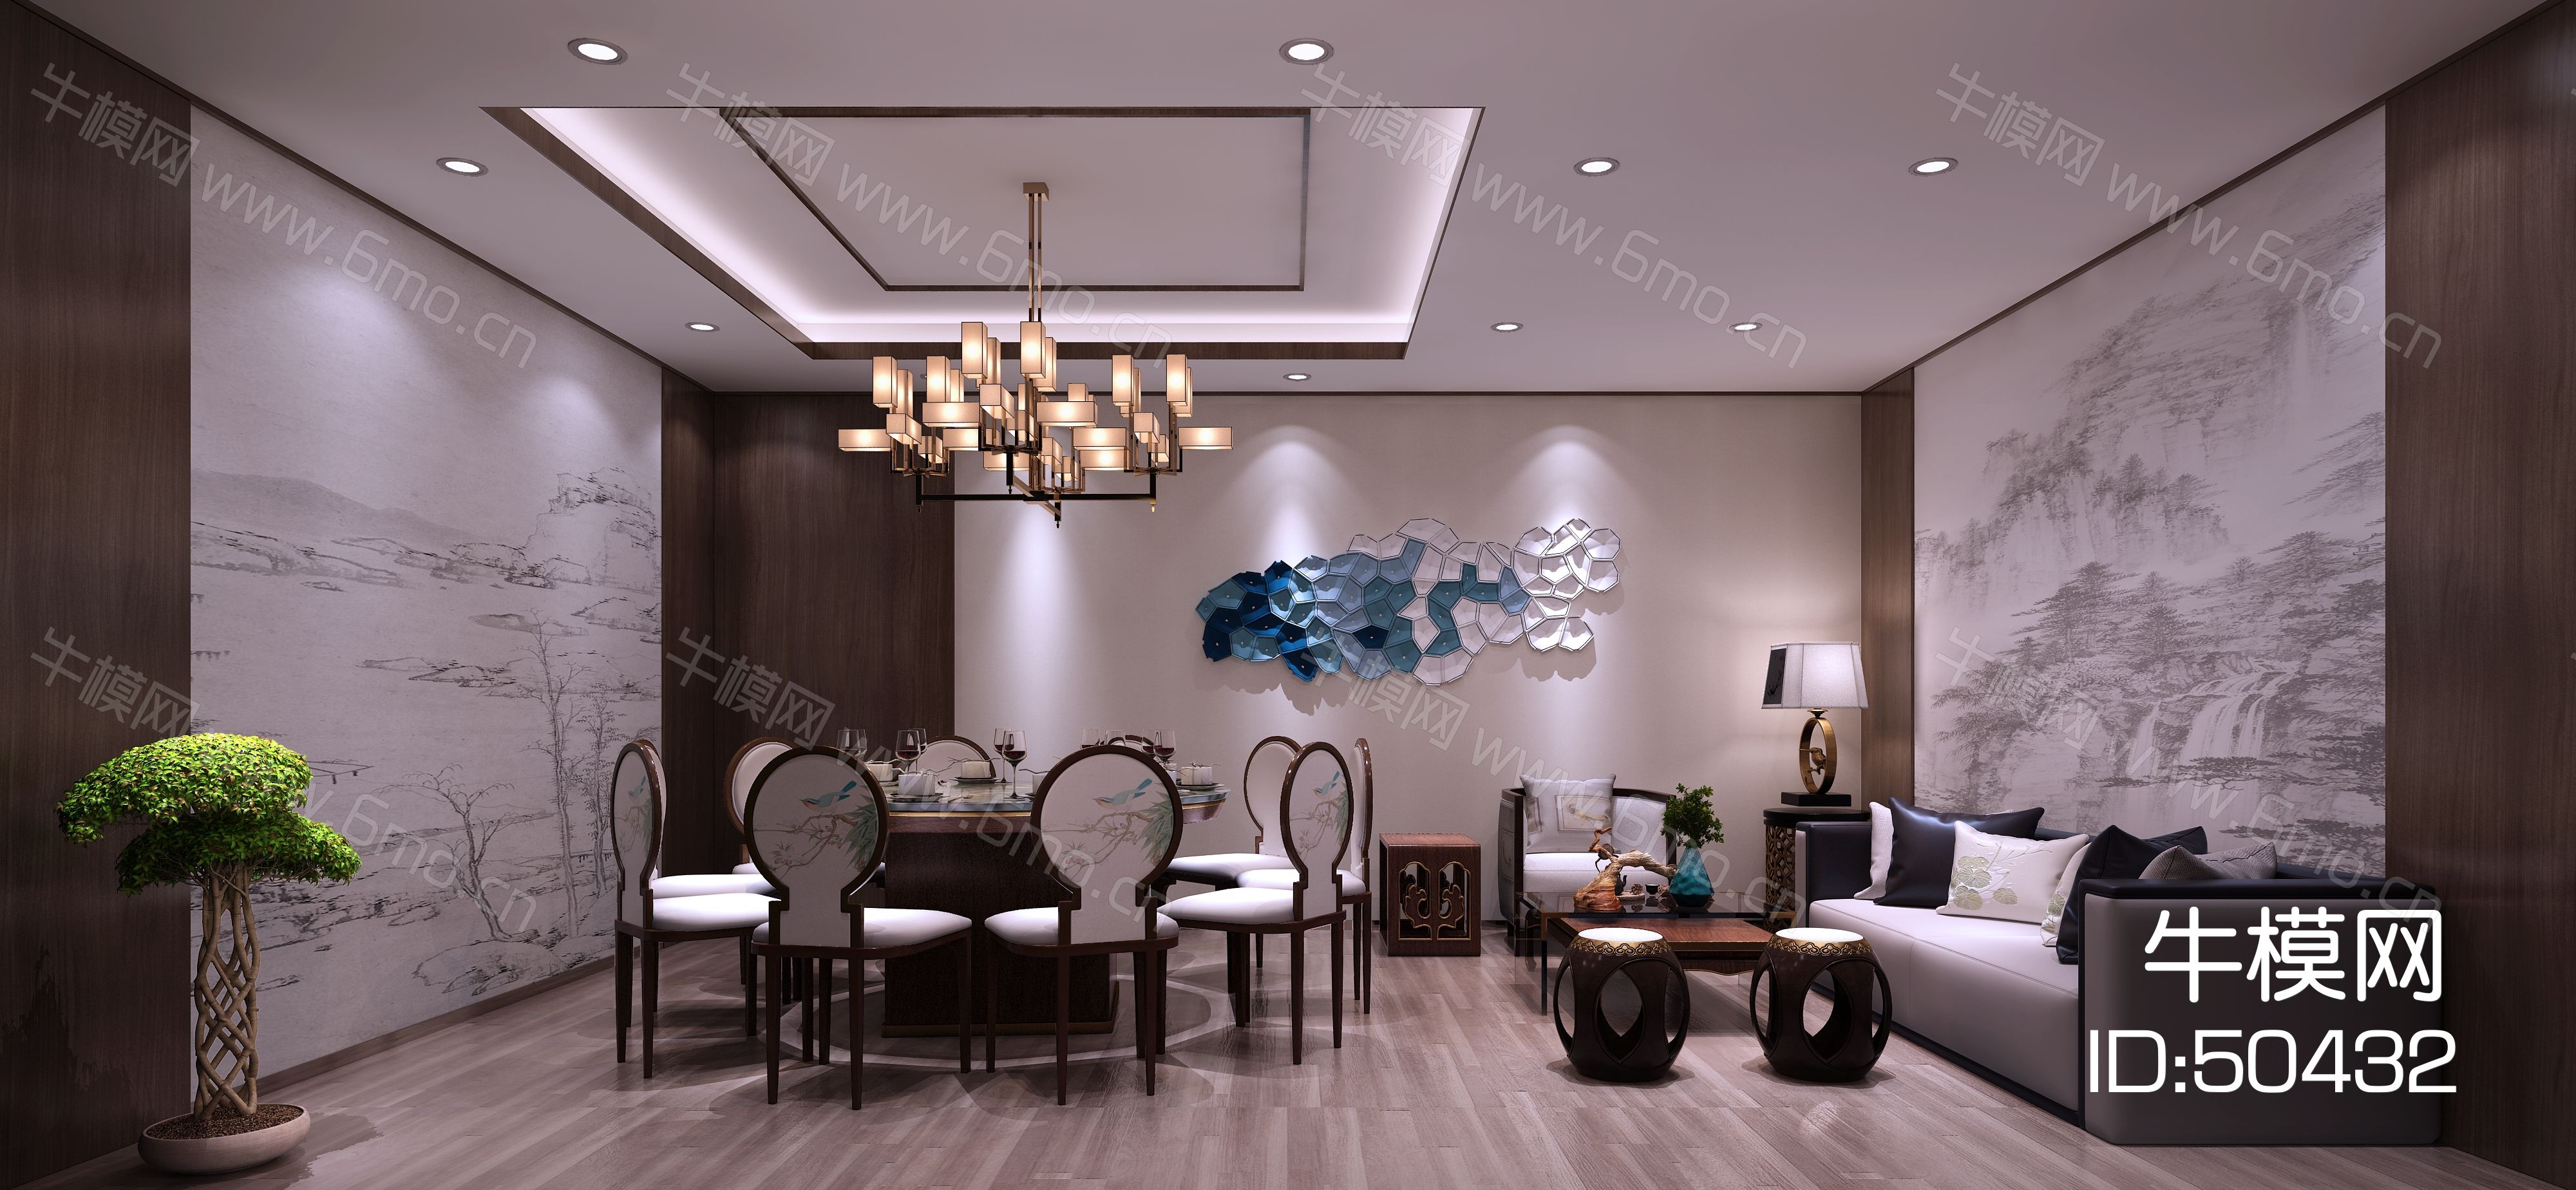 新中式餐厅包厢  餐桌椅  落地灯  墙饰  吊灯 